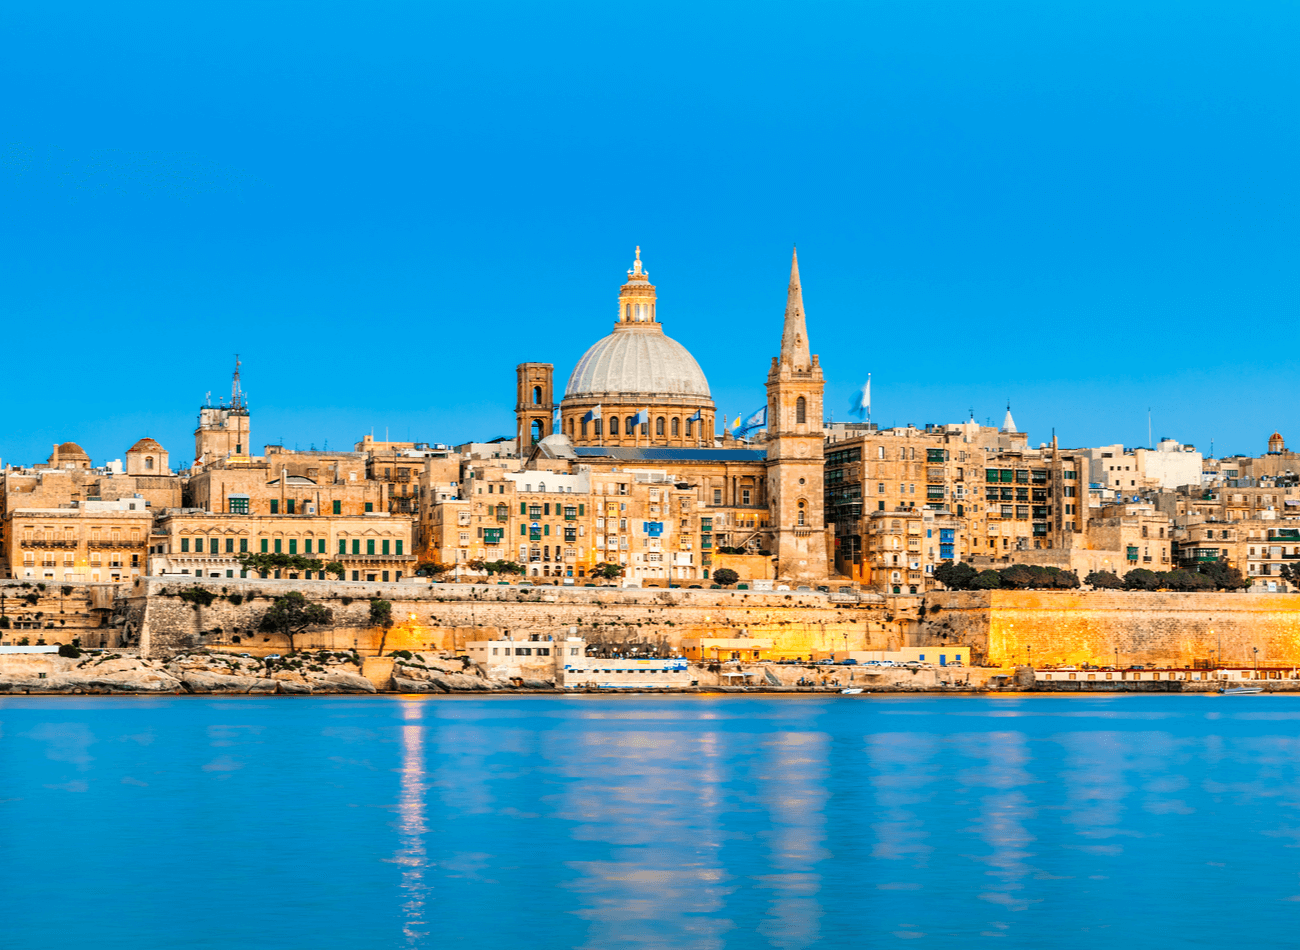 MALTA / Yılbaşı tatilinde yurt dışına çıkarım ama Akdeniz’den vazgeçemem diyenlere önerimiz ise Malta. Dünyanın en küçük ada ülkelerinden biri olan Malta, kış mevsiminden uzaklaşıp sıcak bir tatil yapmak isteyenlerin gidebileceği bir yer.